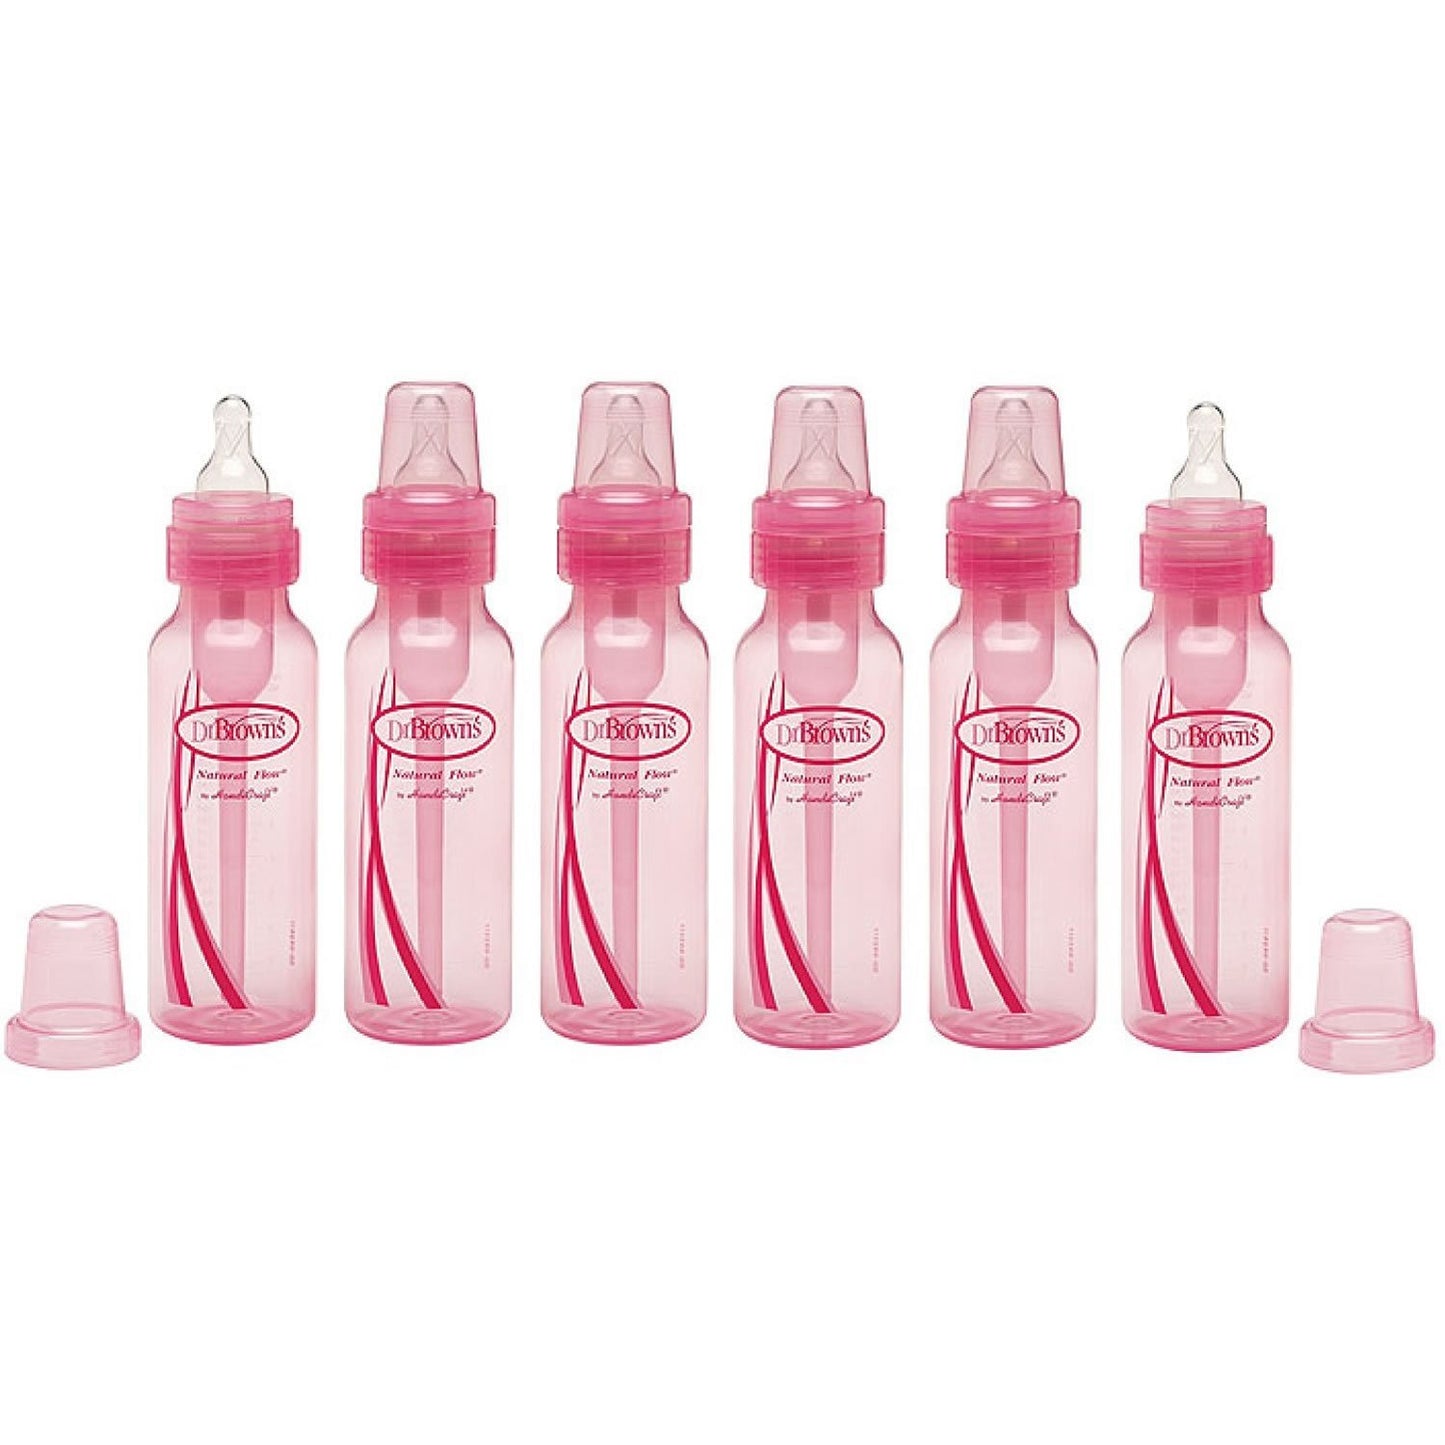 Dr. Brown's Standard Pink 8oz Bottles - 6 Count